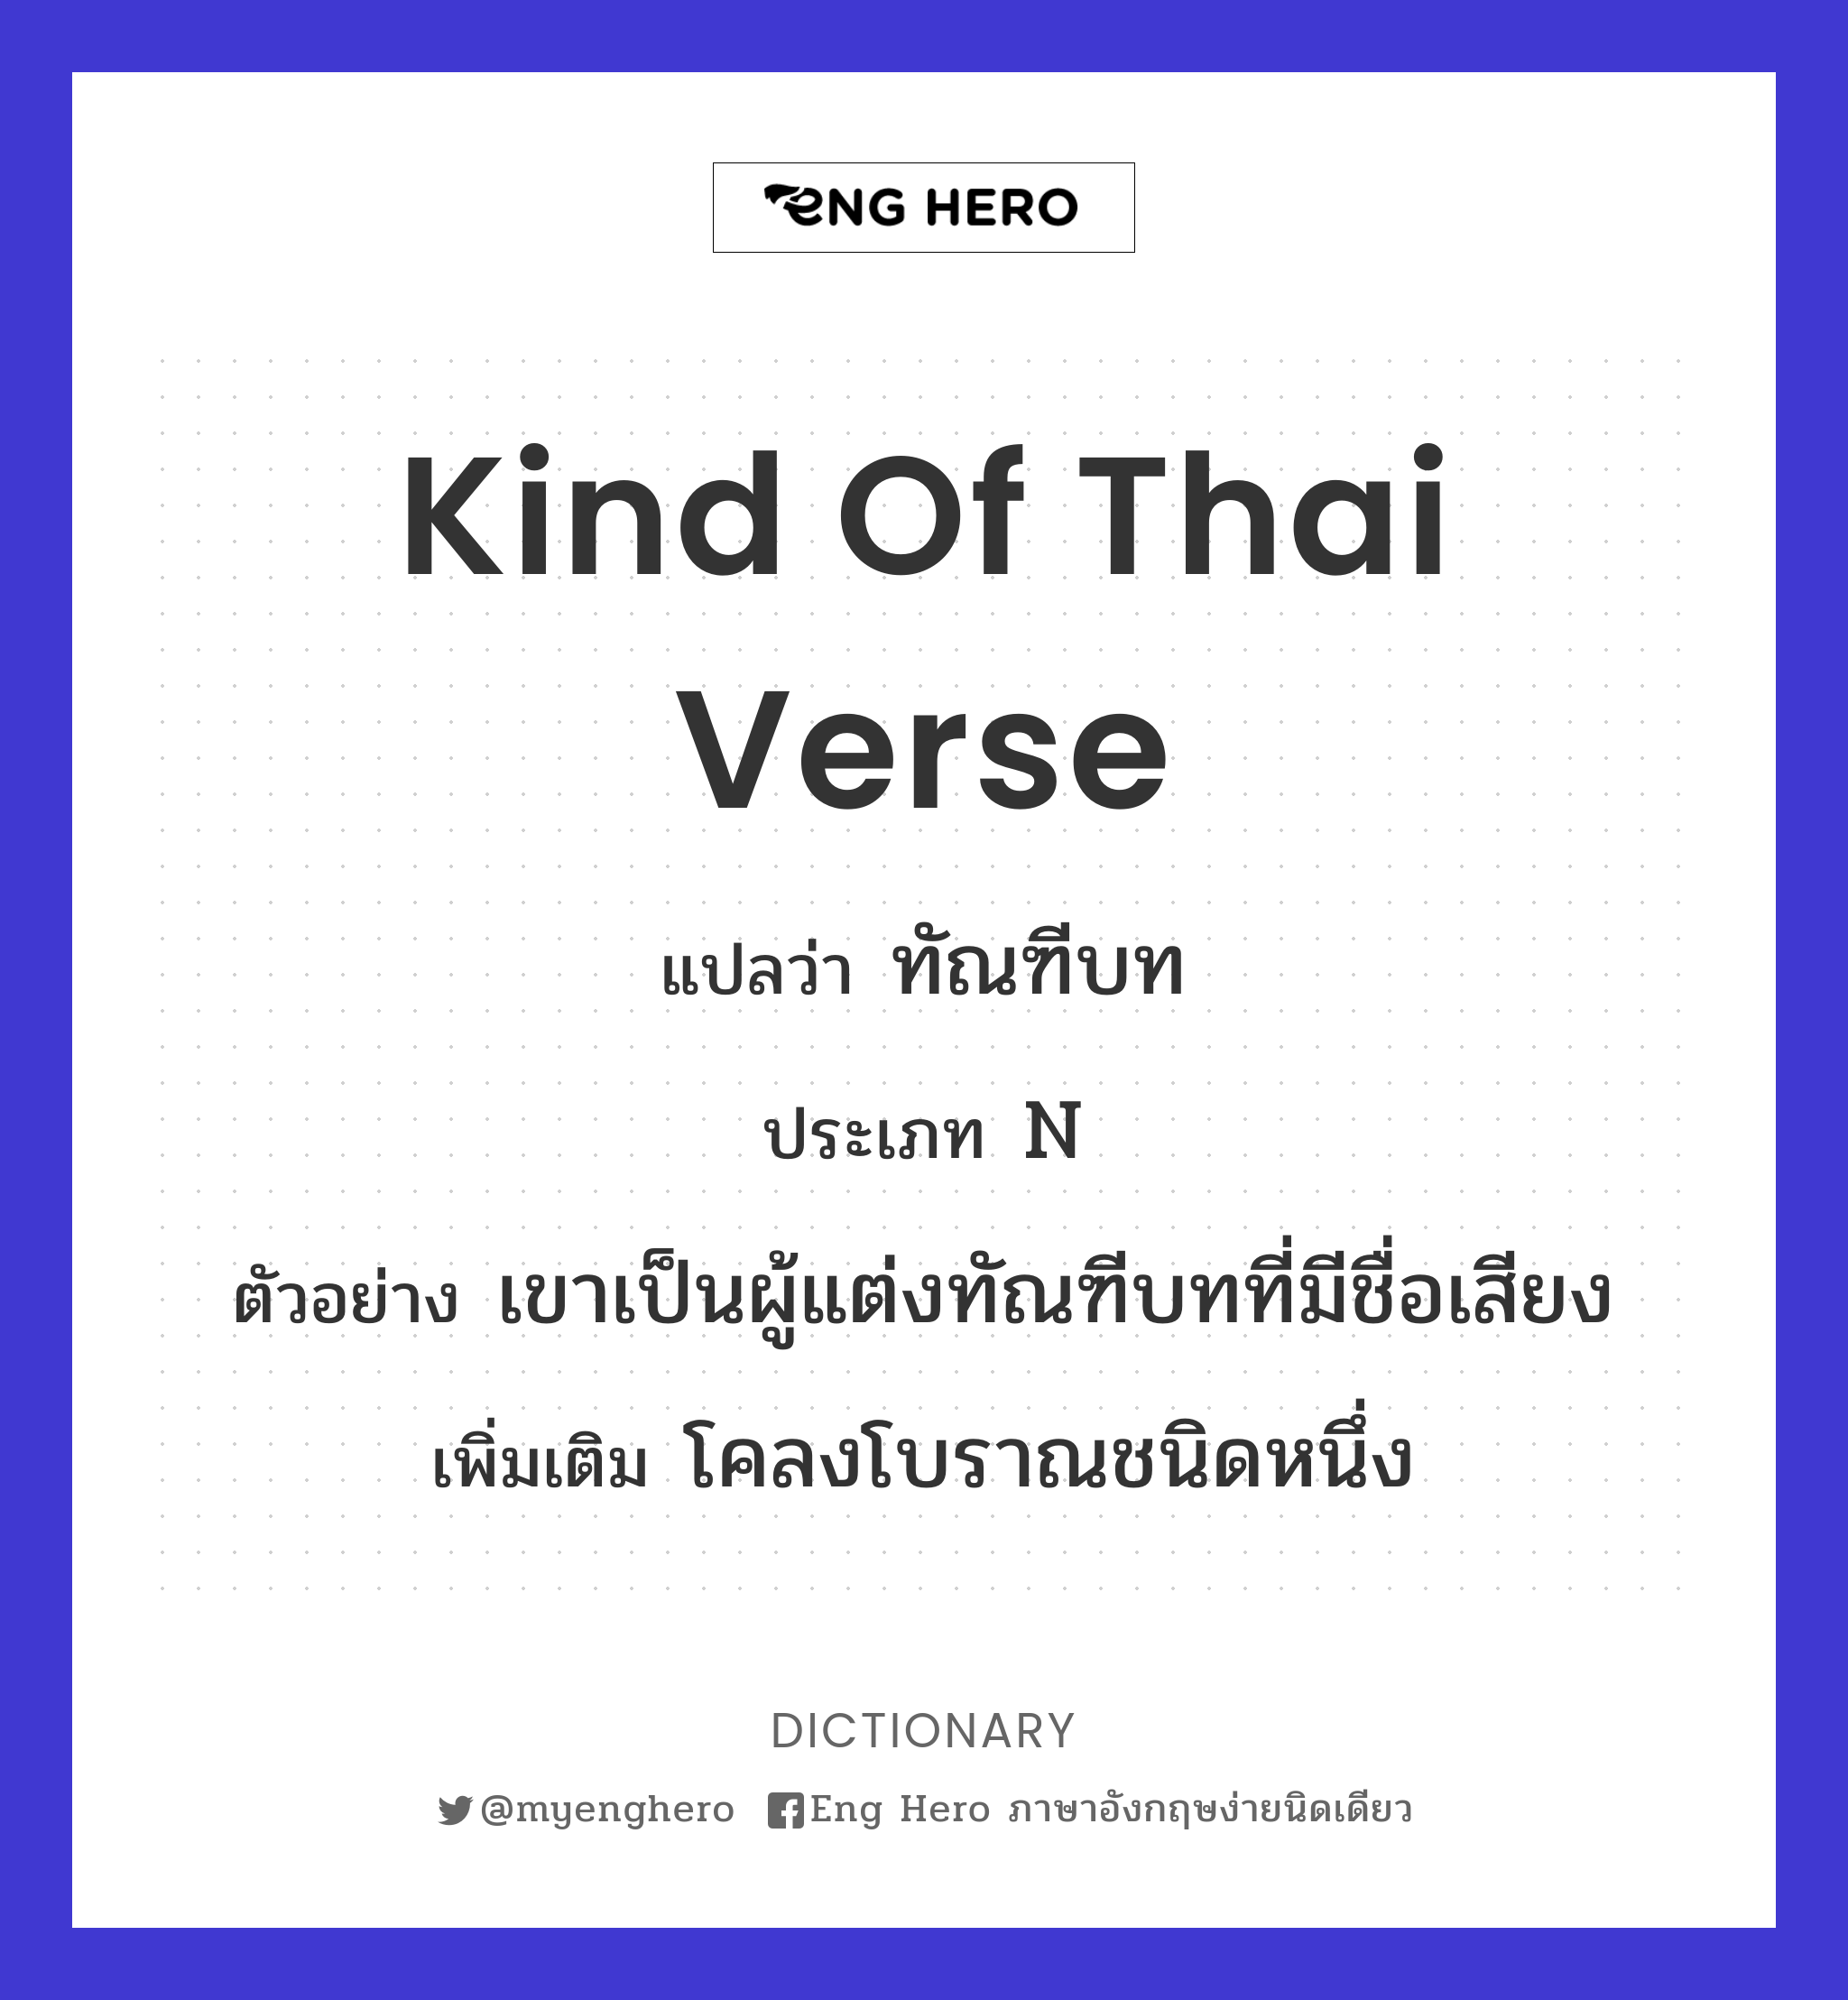 kind of Thai verse